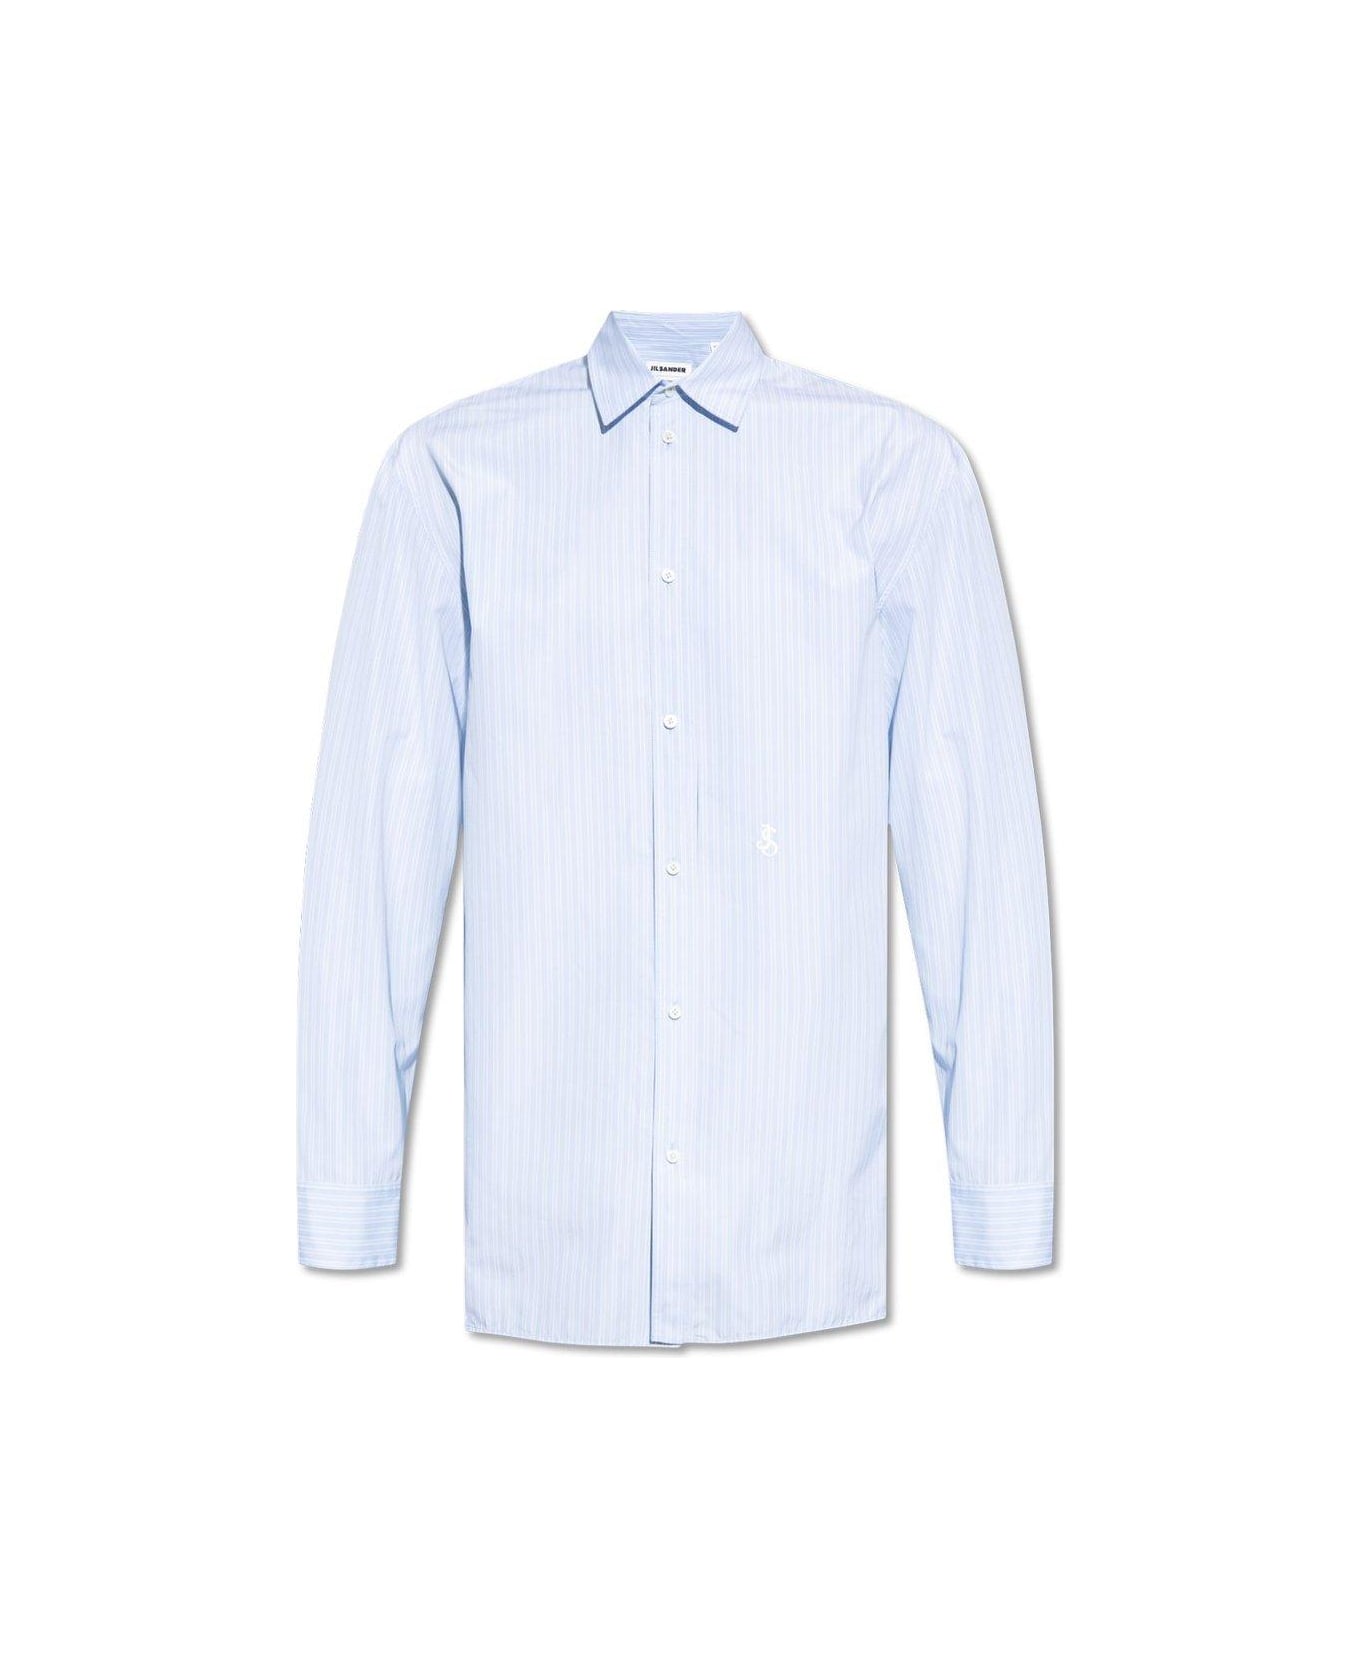 Jil Sander Light Blue Cotton Shirt - Light Blue